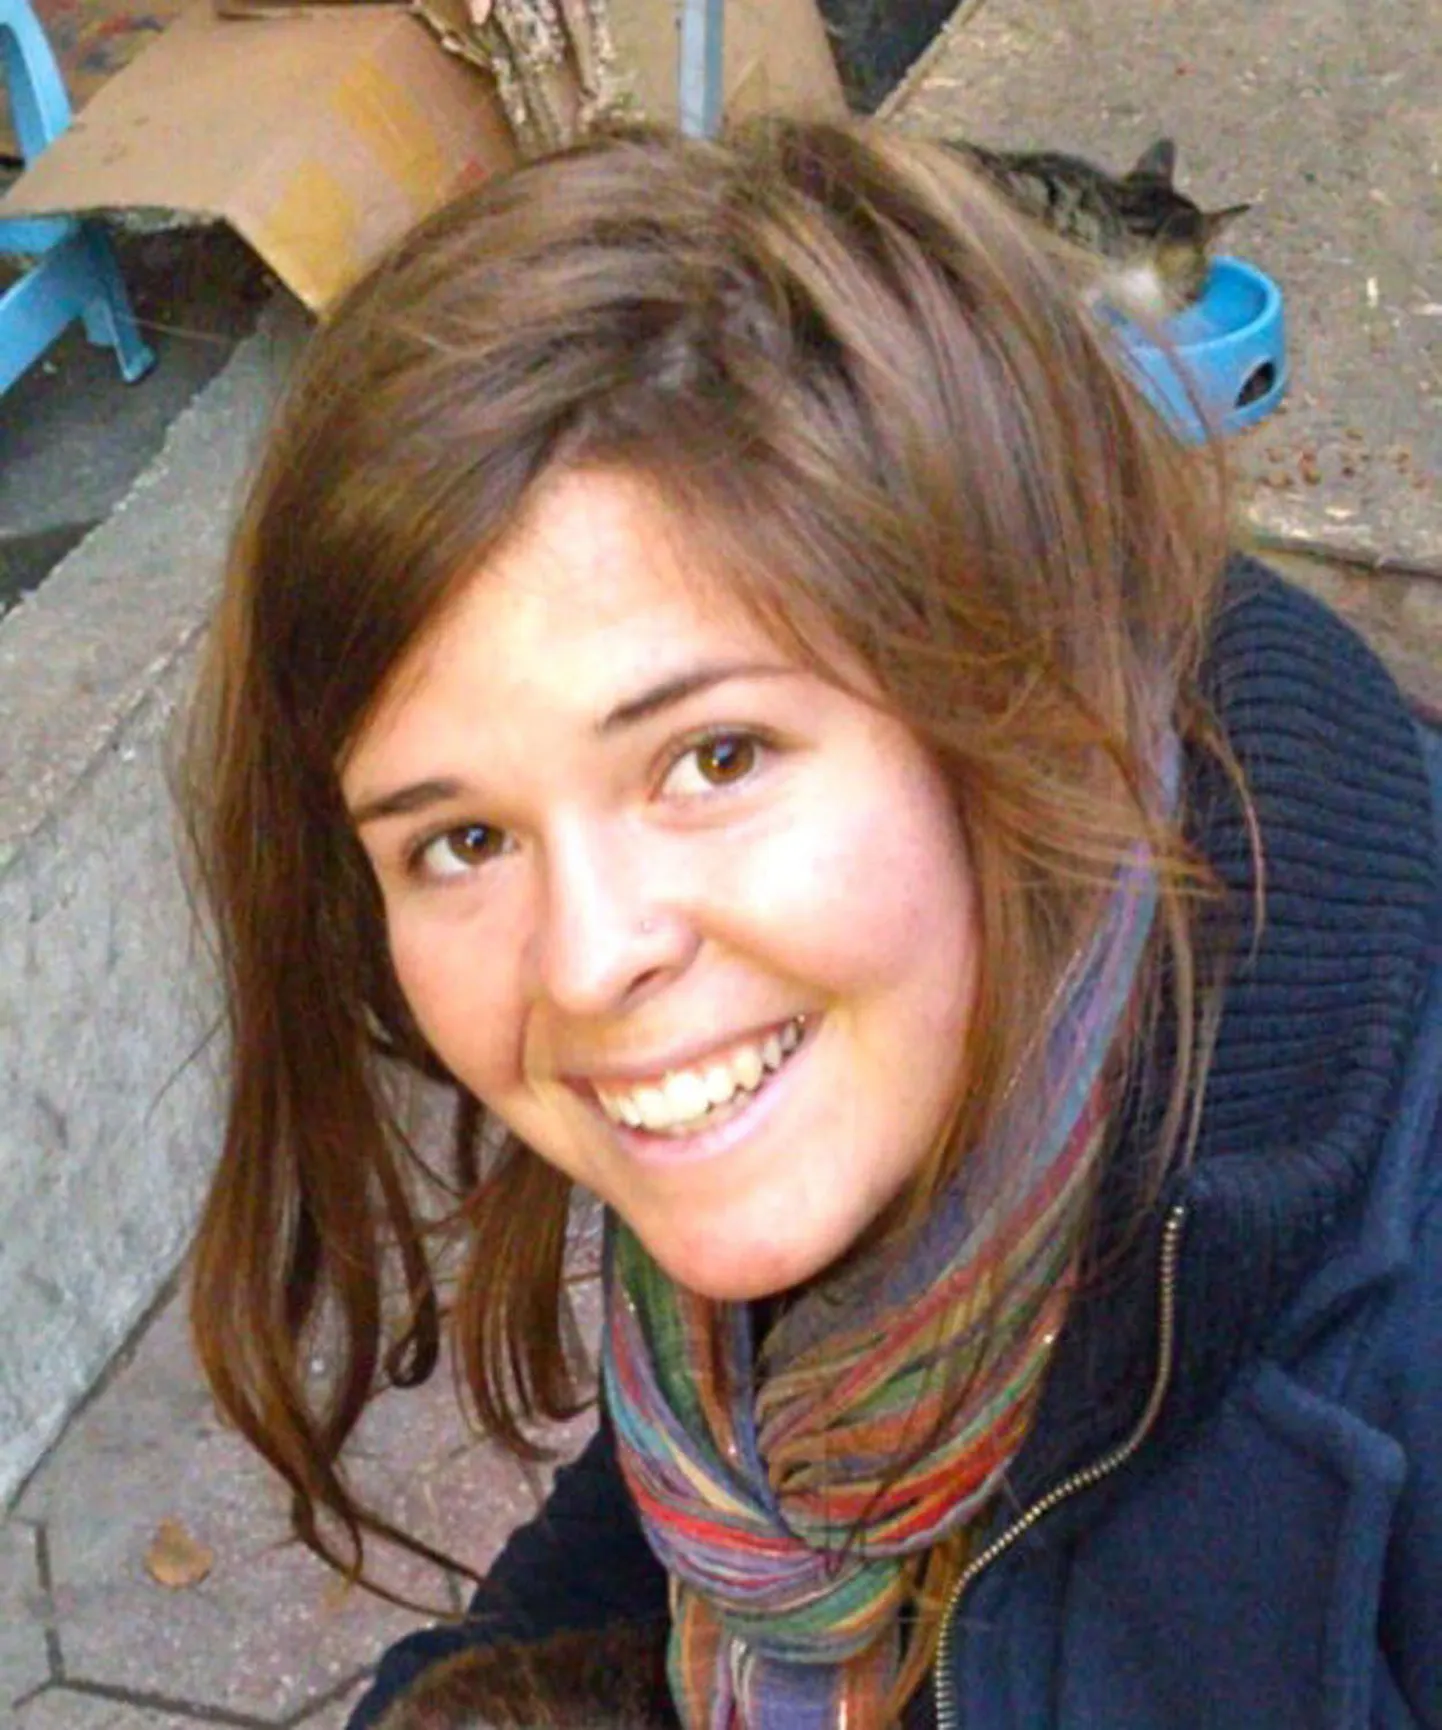 Кайла Джин Мюллер была схвачена боевиками в августе 2013 года в сирийском городе Алеппо.